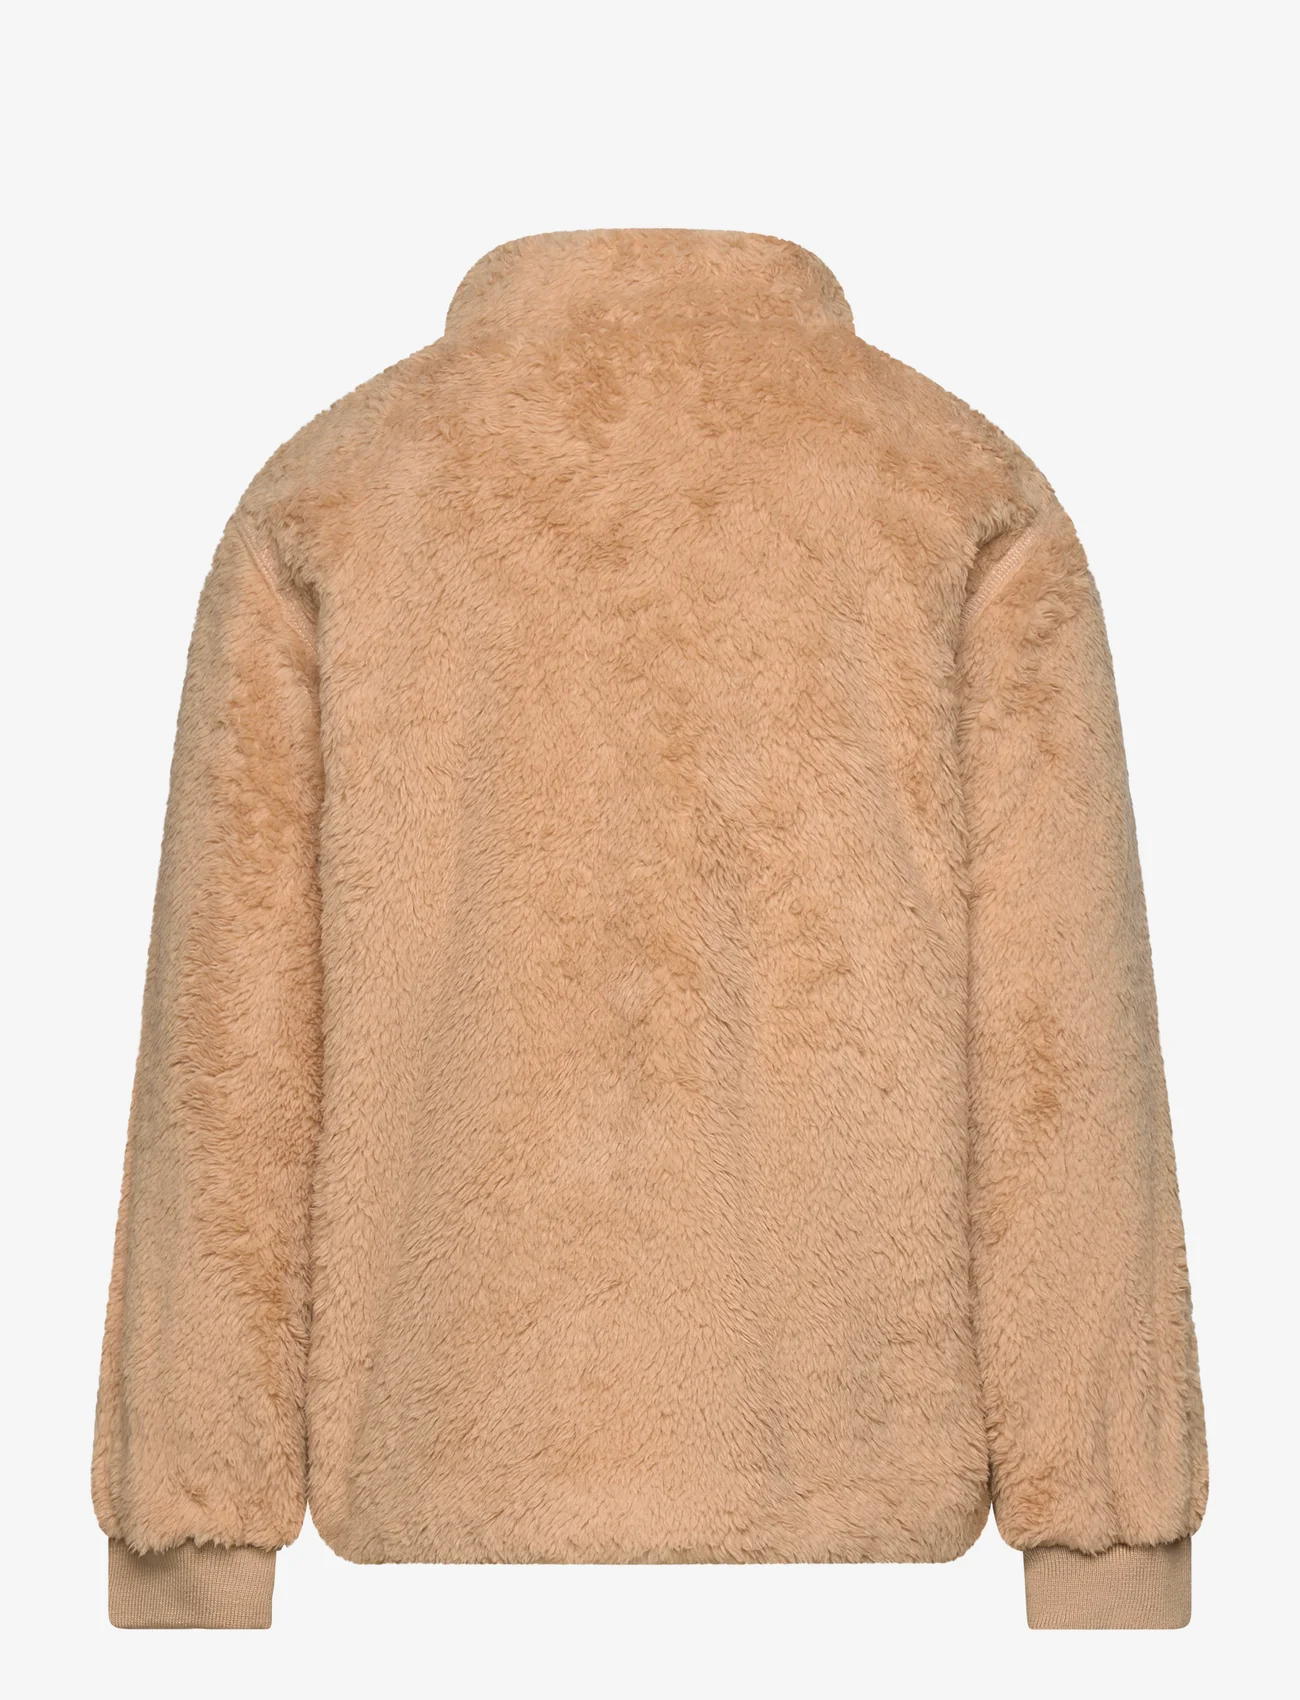 ebbe Kids - Stuga Fleece Jacket - fleece jacket - 0649 sand - 1